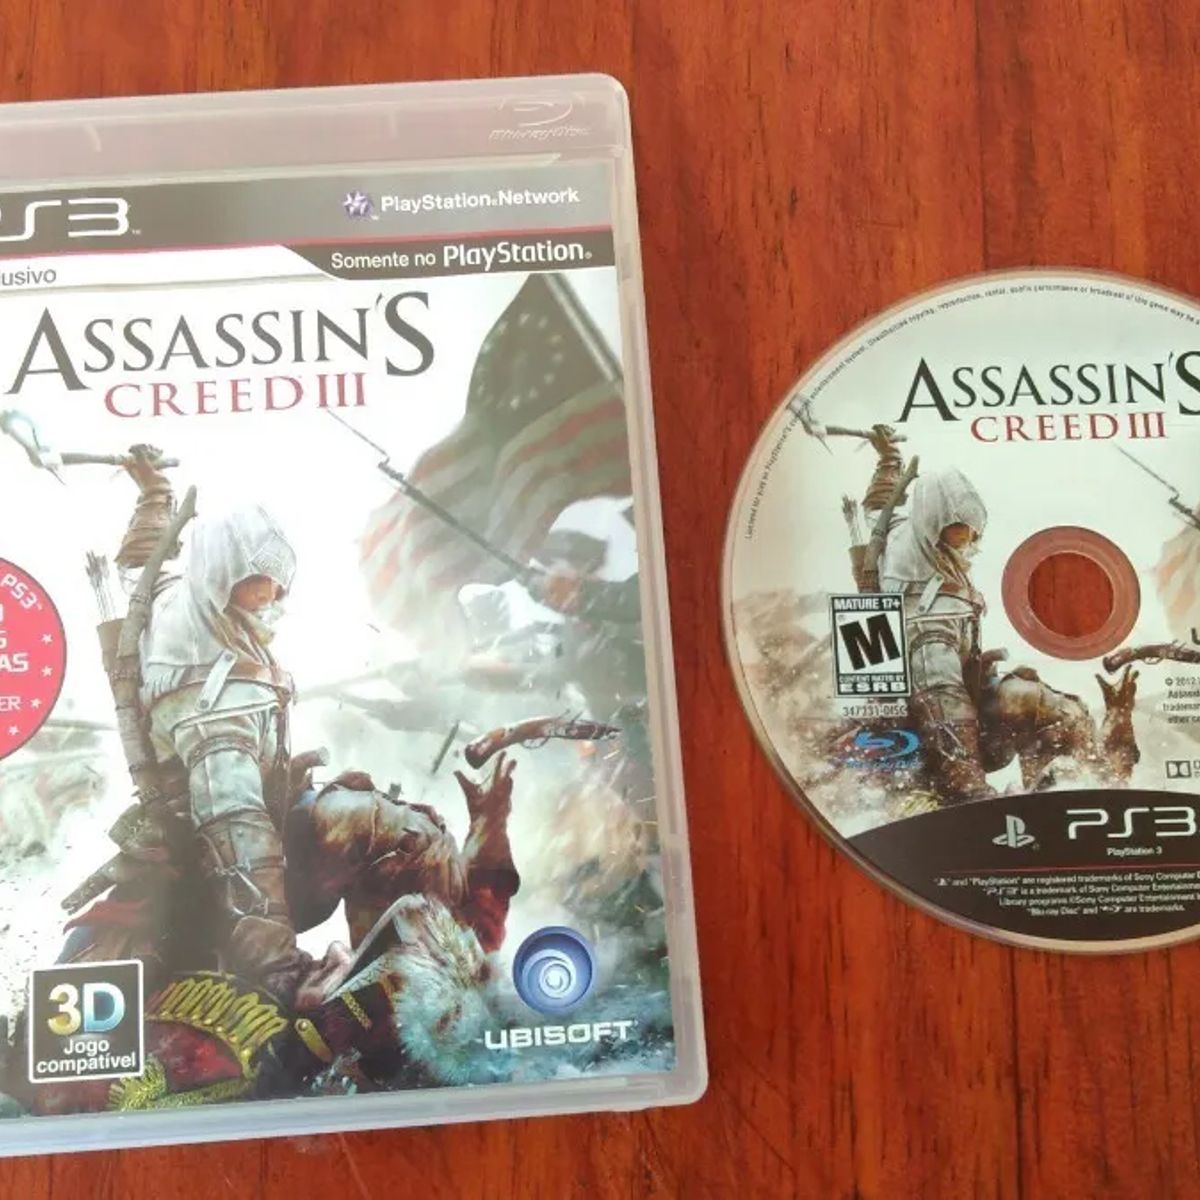 Assassin's Creed III (3) (Seminovo) - PS3